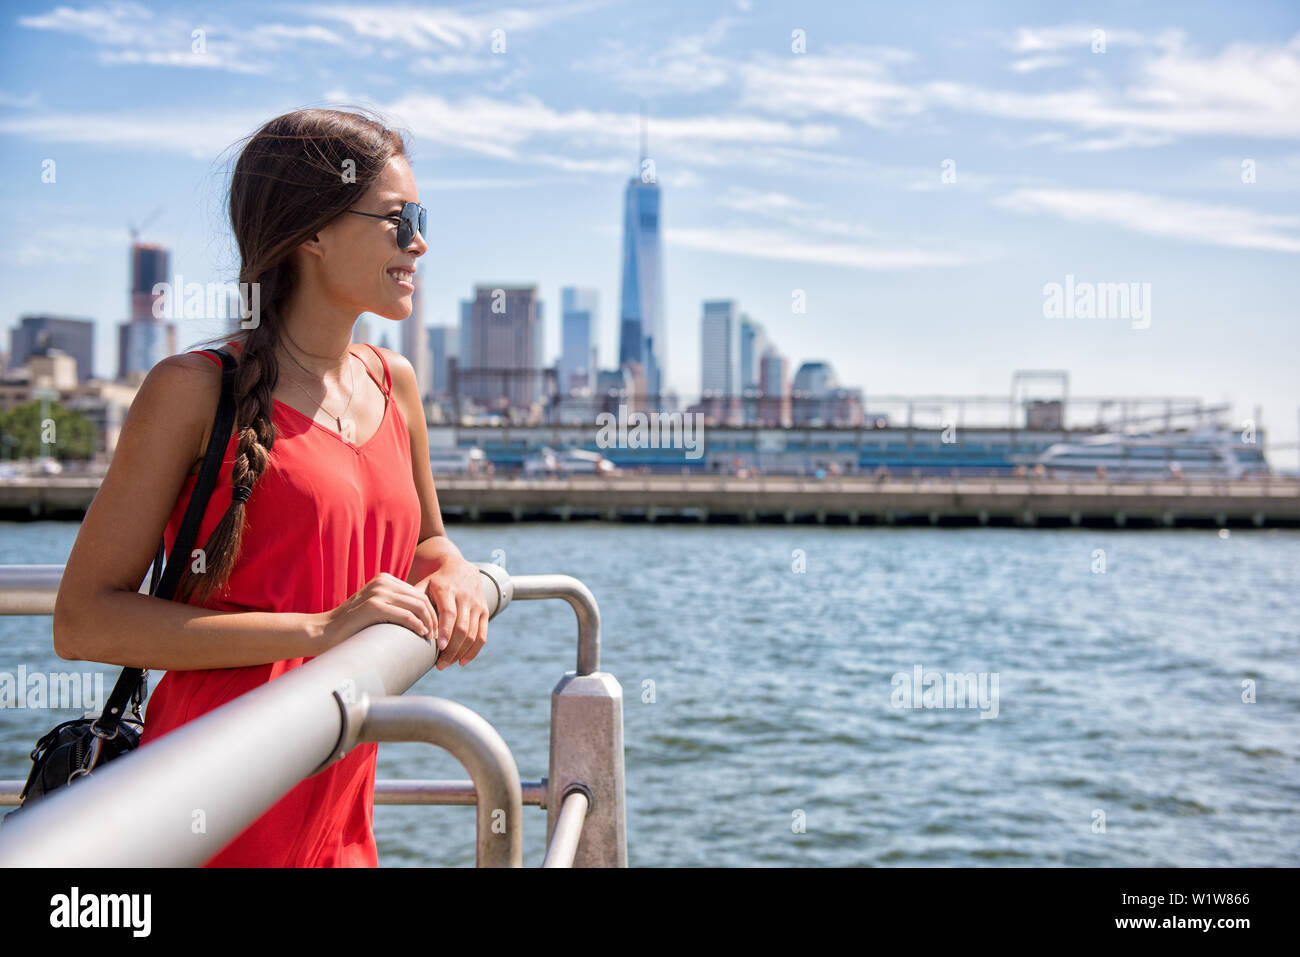 New York City travel - Tourist donna sul viaggio estivo guardando waterfront vista della skyline con un edificio a torre in background. Foto Stock